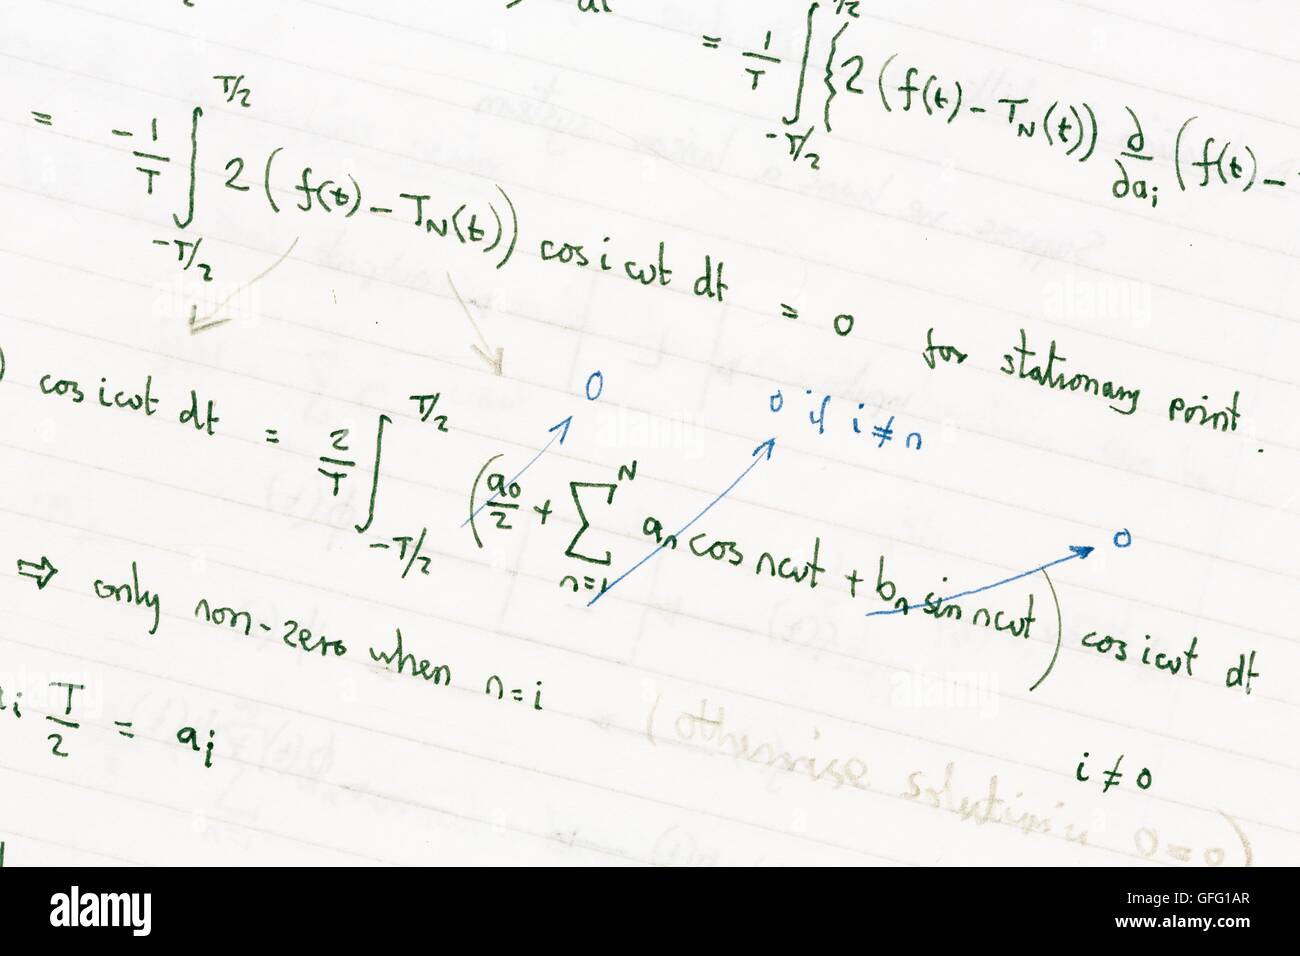 Ejercicios de matemáticas mostrando fórmulas matemáticas escritas a mano Foto de stock